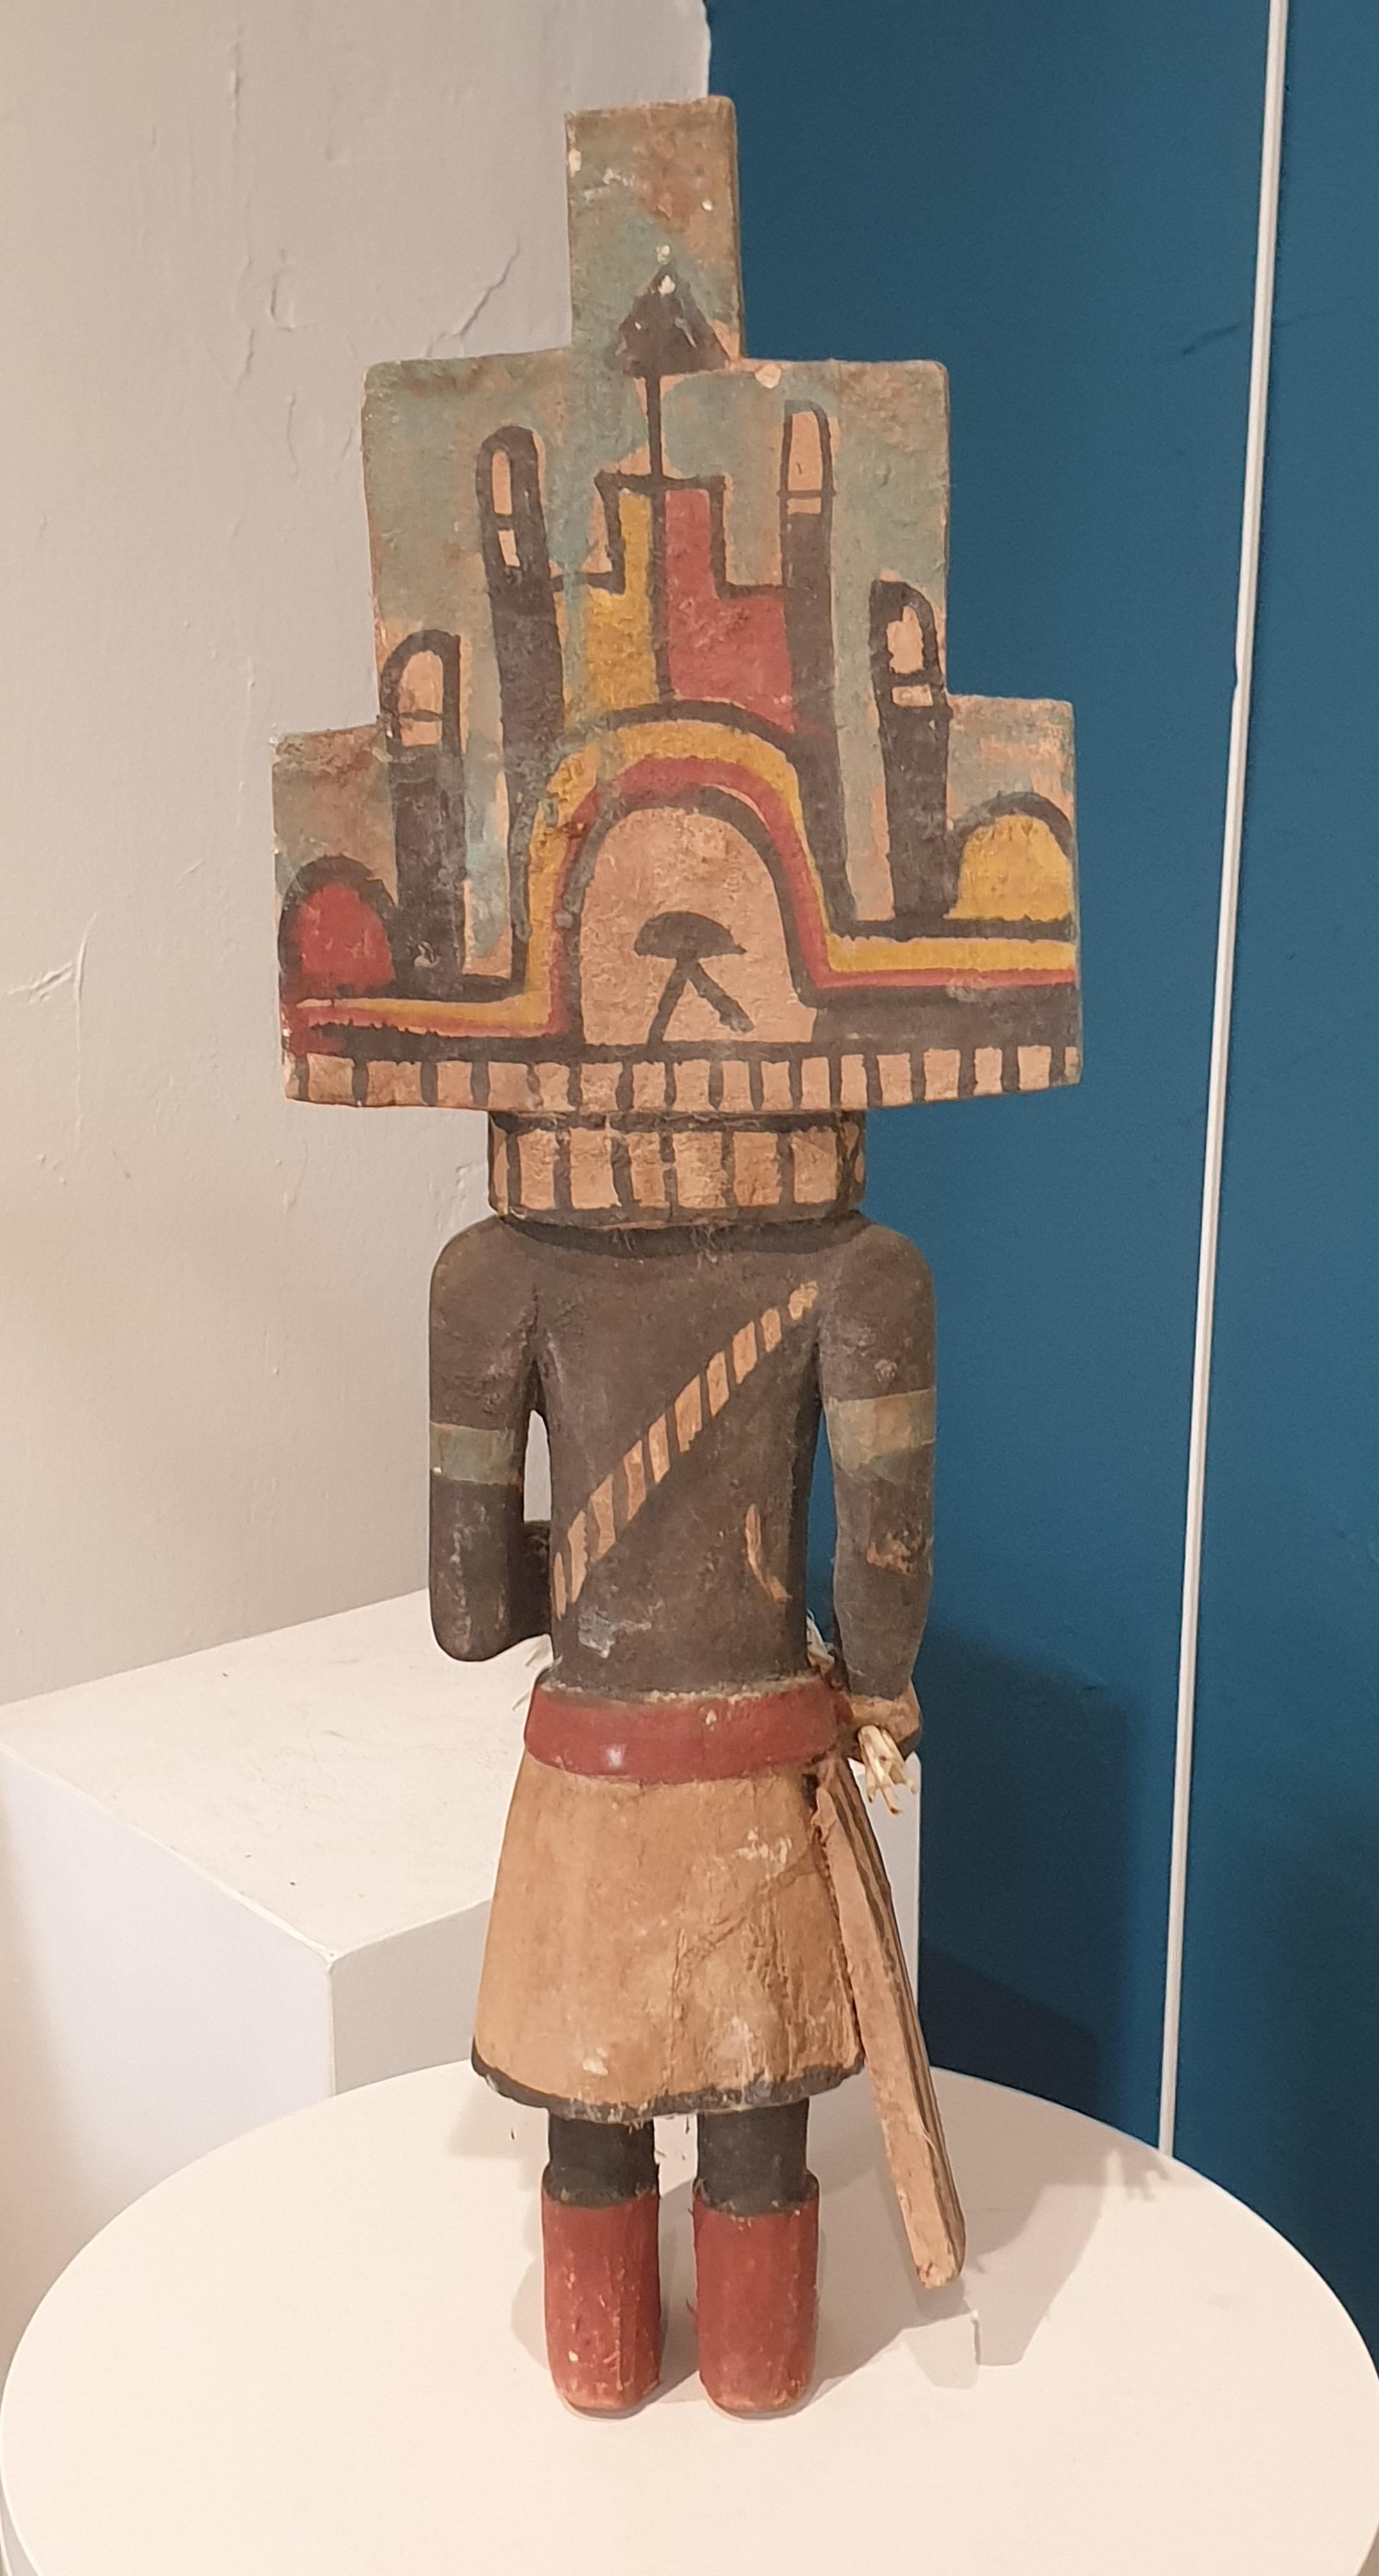 Aus Holz geschnitzte und bemalte Bildnisfigur der nordamerikanischen Ureinwohner, Hopi Katsina oder Kachina-Puppe.  Diese Puppe gehört zu einer Gruppe von acht Puppen, die alle einzeln oder als Set bei 1stdibs erhältlich sind.

Hopi Katsina-Puppen